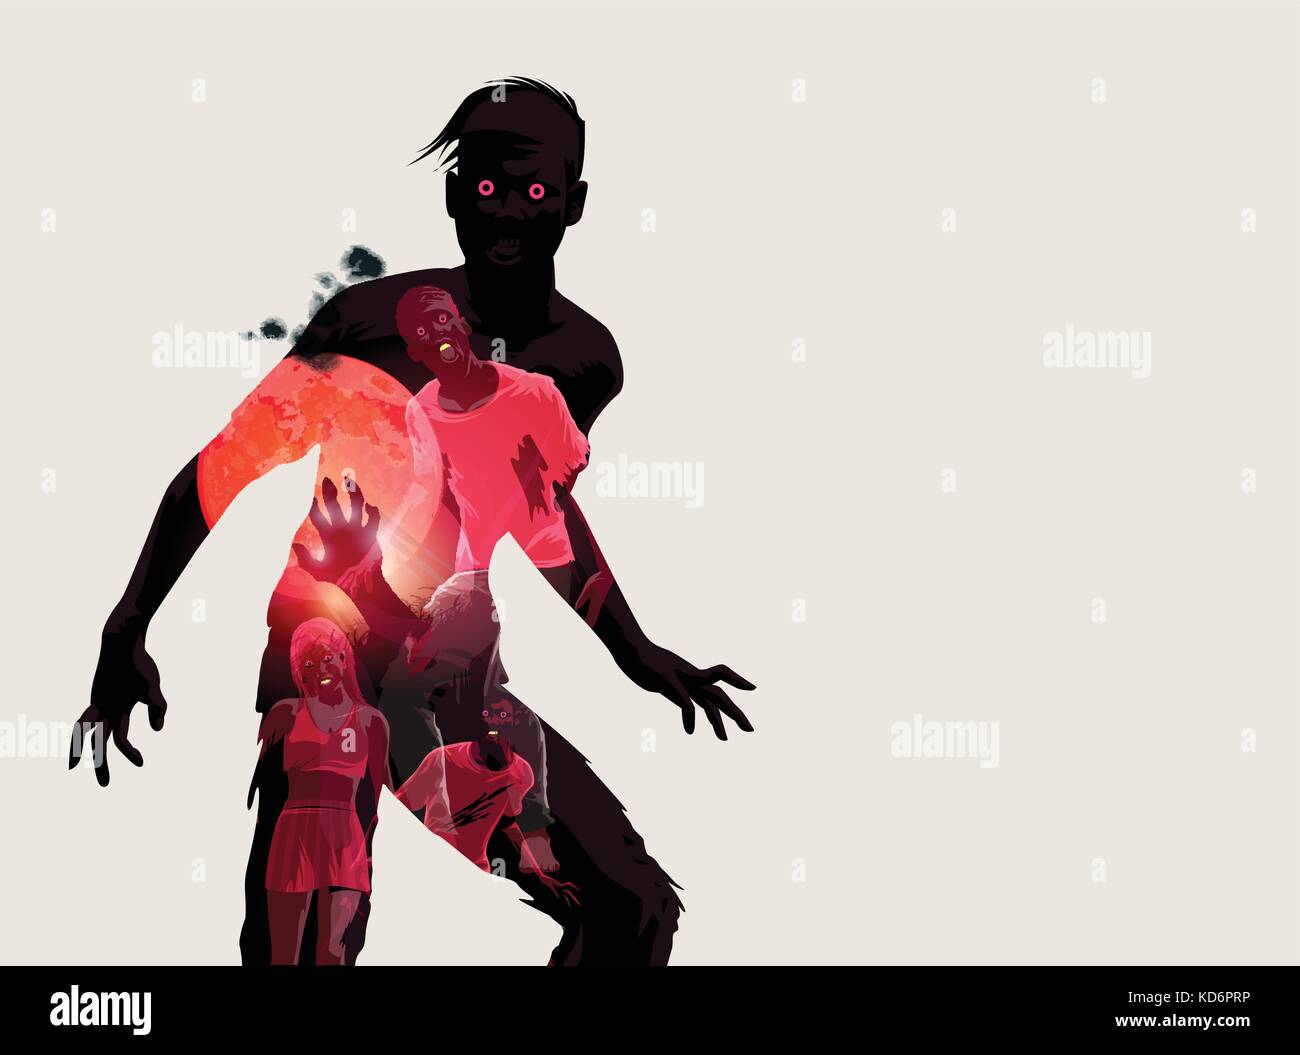 Fleshing eating dead zombie silhouette. Vector illustration Stock Vector